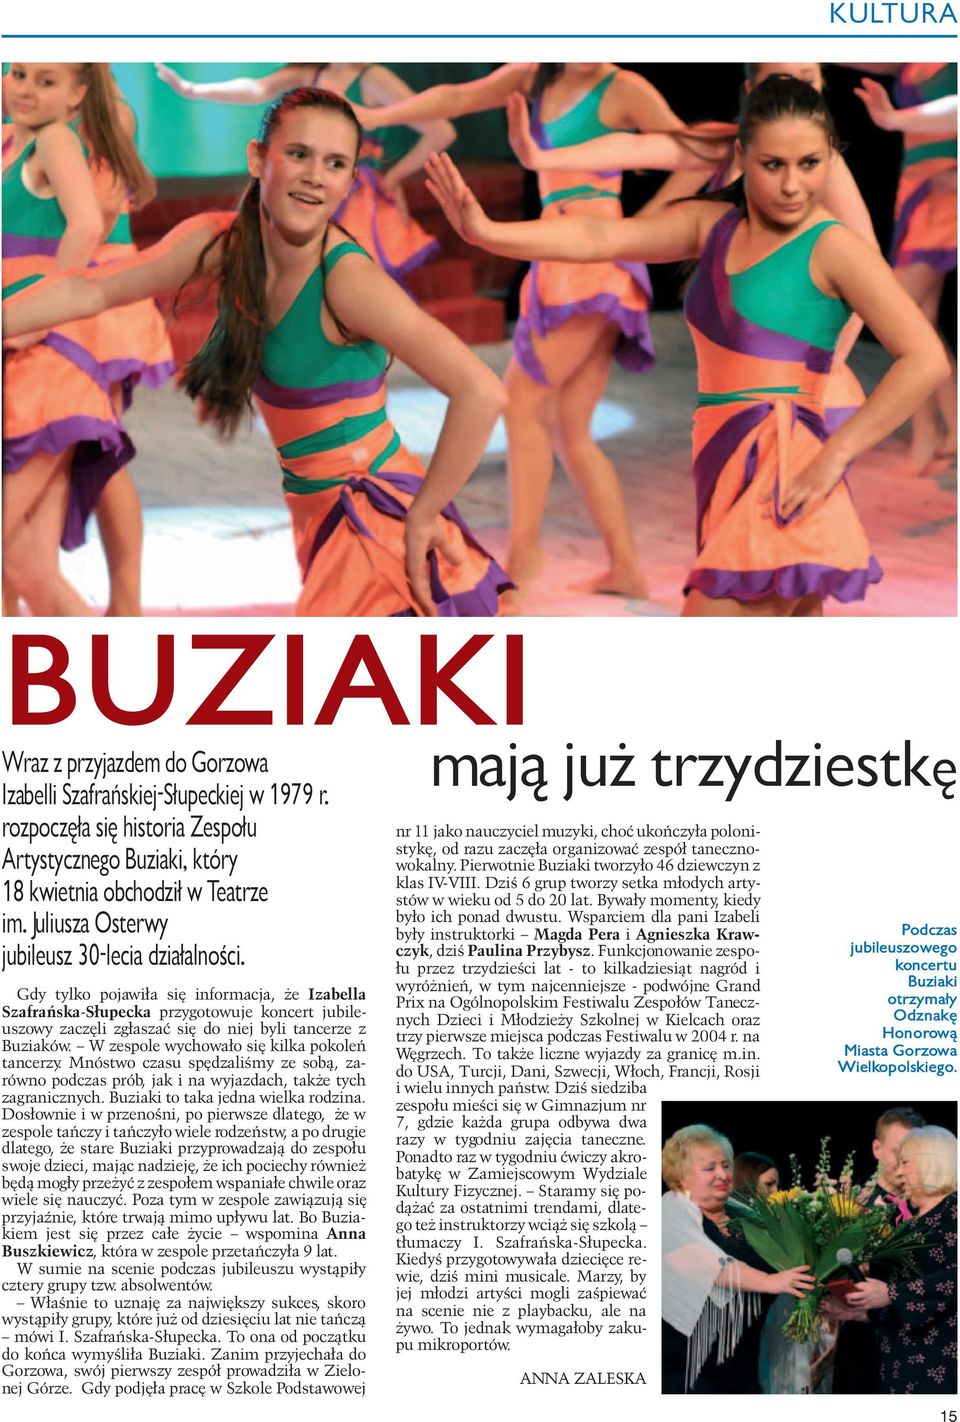 Gdy tylko pojawiła się informacja, że Izabella Szafrańska-Słupecka przygotowuje koncert jubileuszowy zaczęli zgłaszać się do niej byli tancerze z Buziaków.